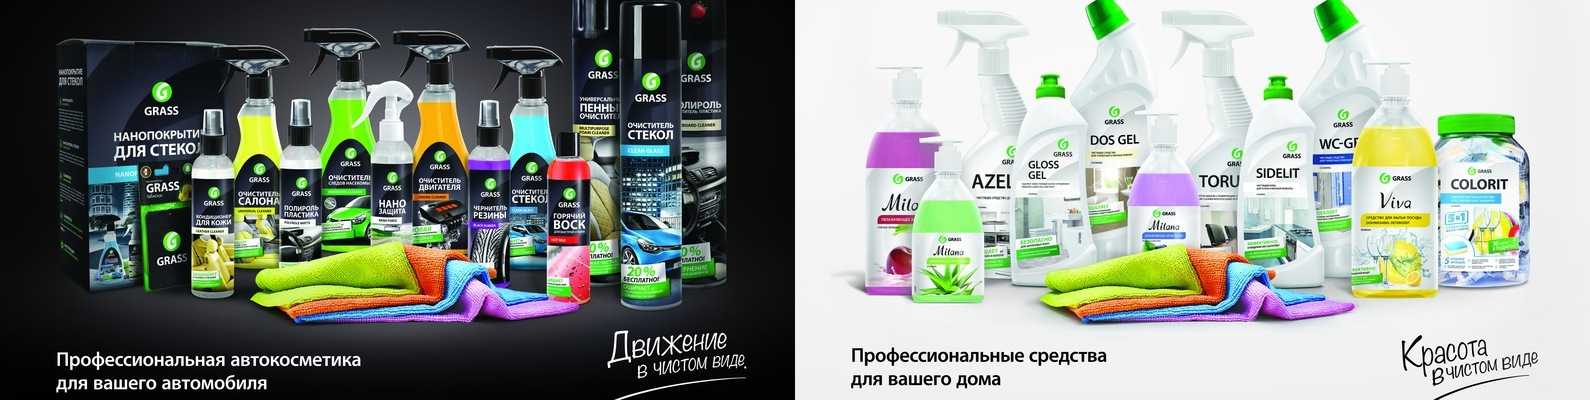 Отмоем и обставим. 16 российских брендов бытовой химии и товаров для дома